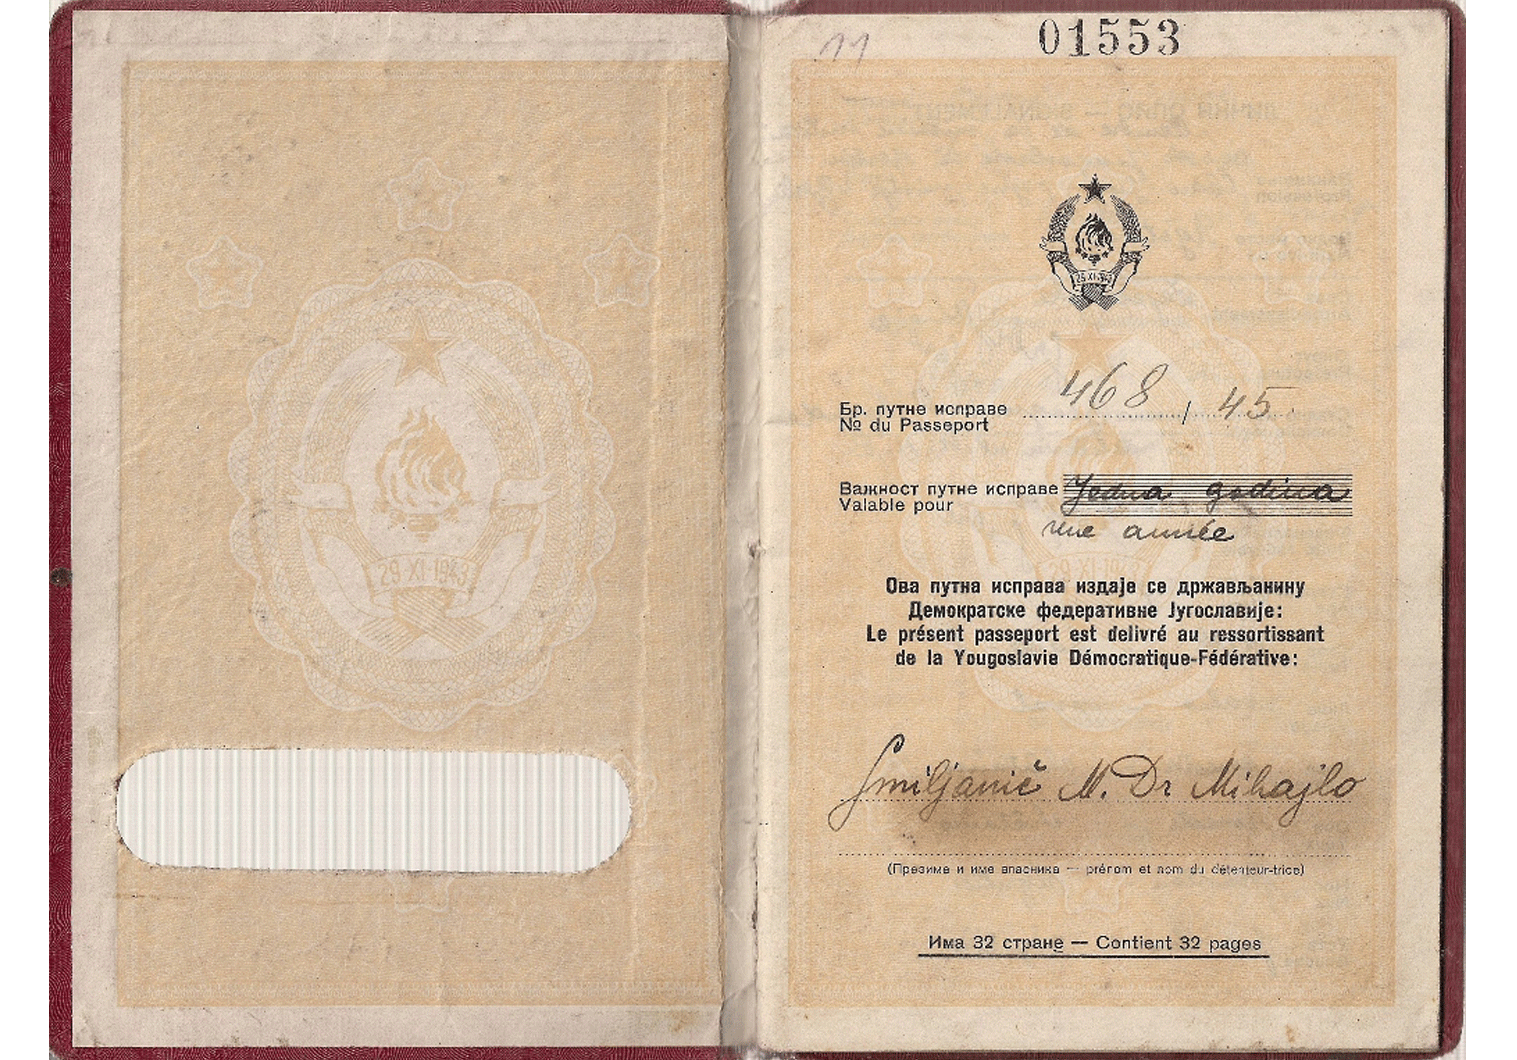 1945 Yugoslavian official passport